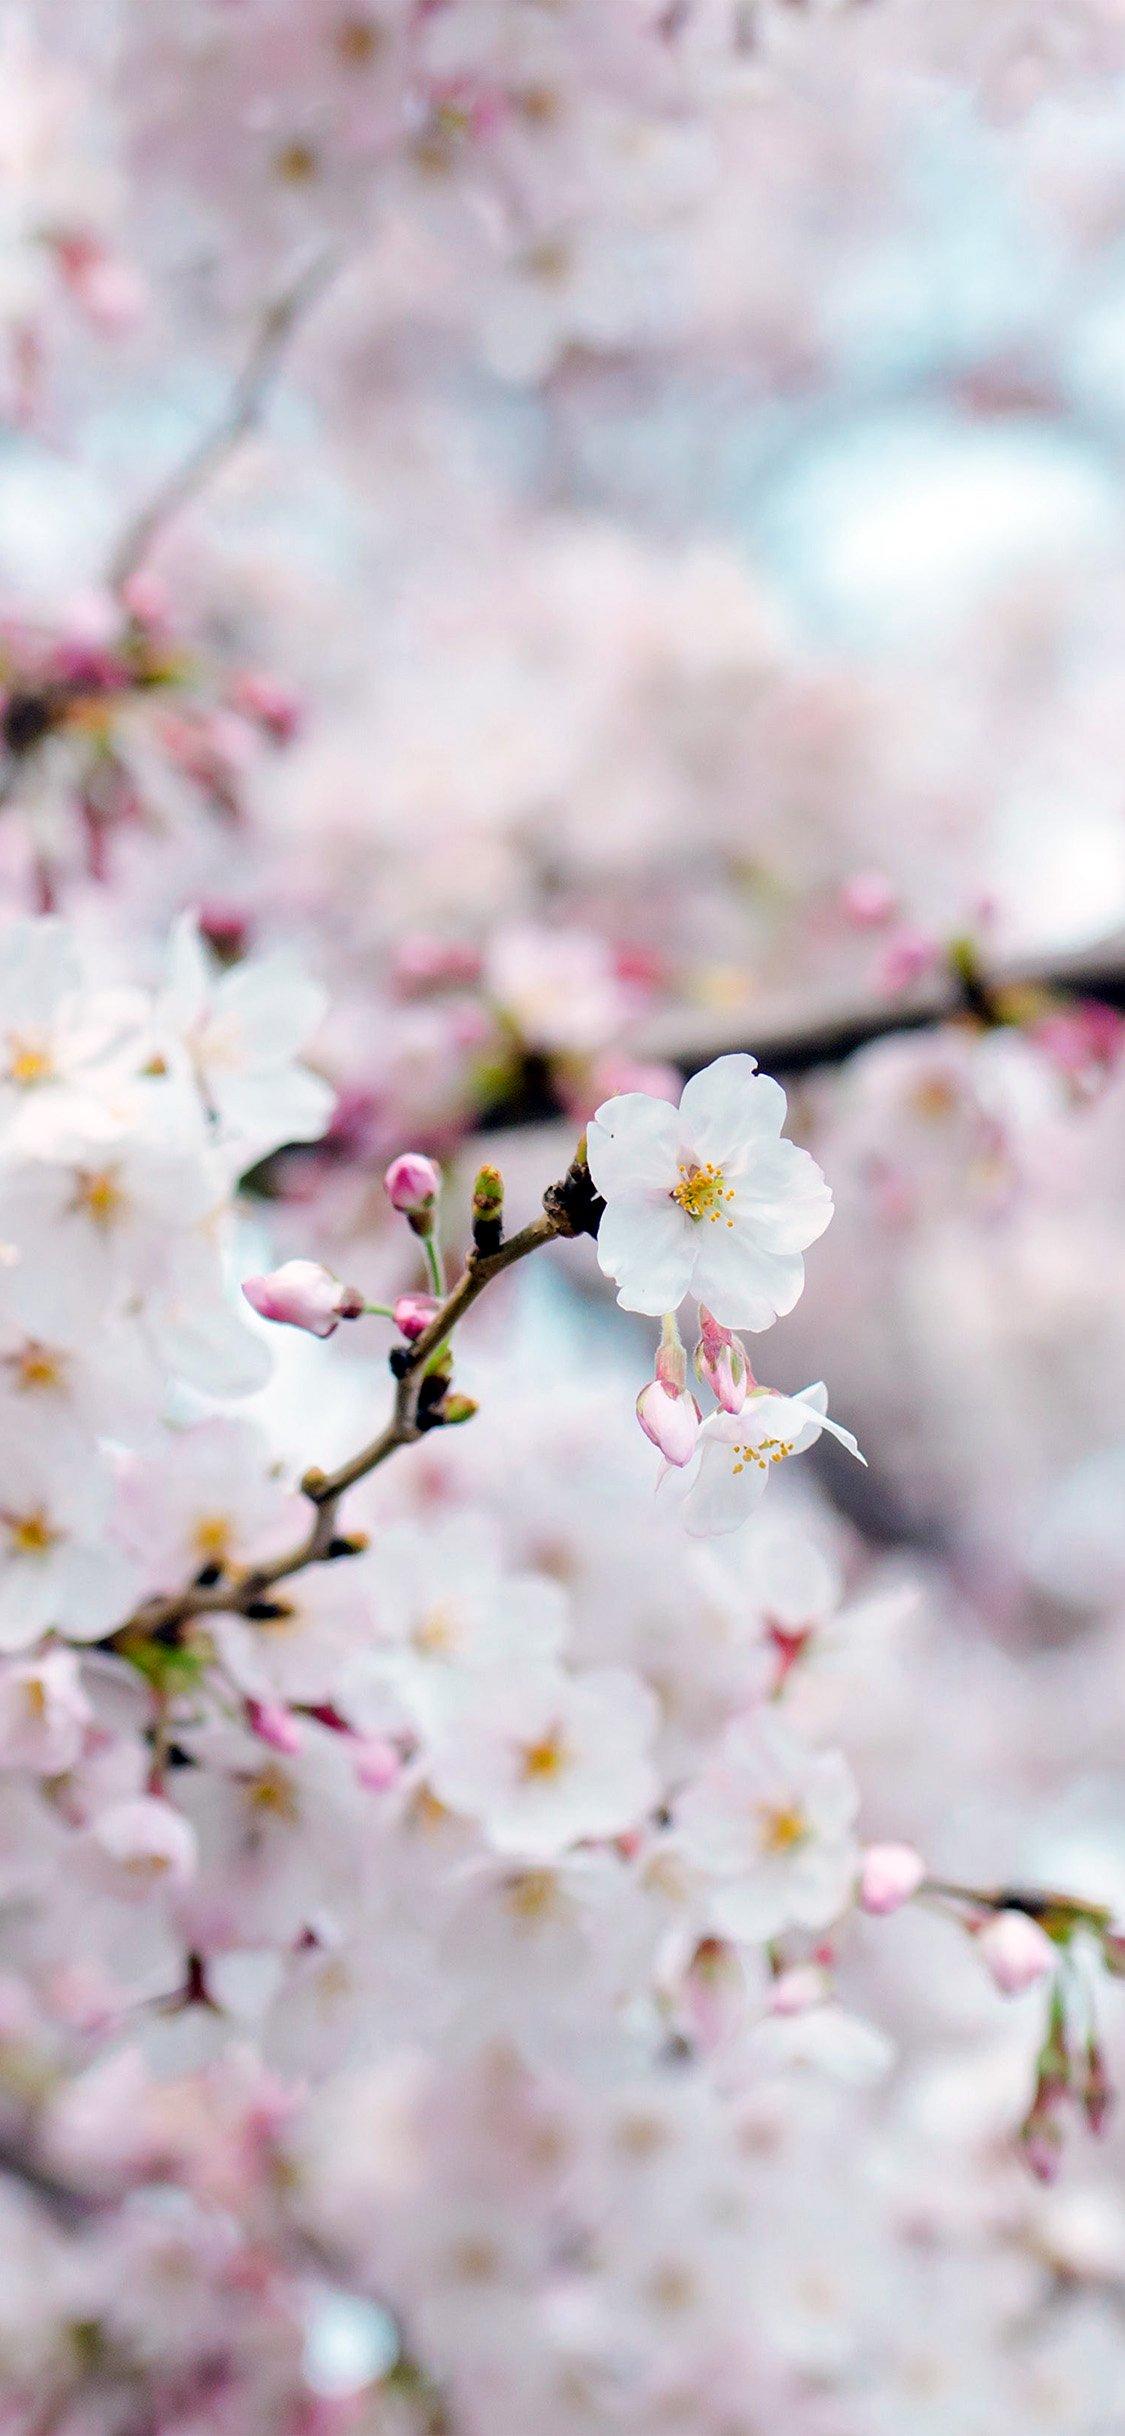 flower: iPhone Full HD Flower Cherry Blossom Nature Wallpaper